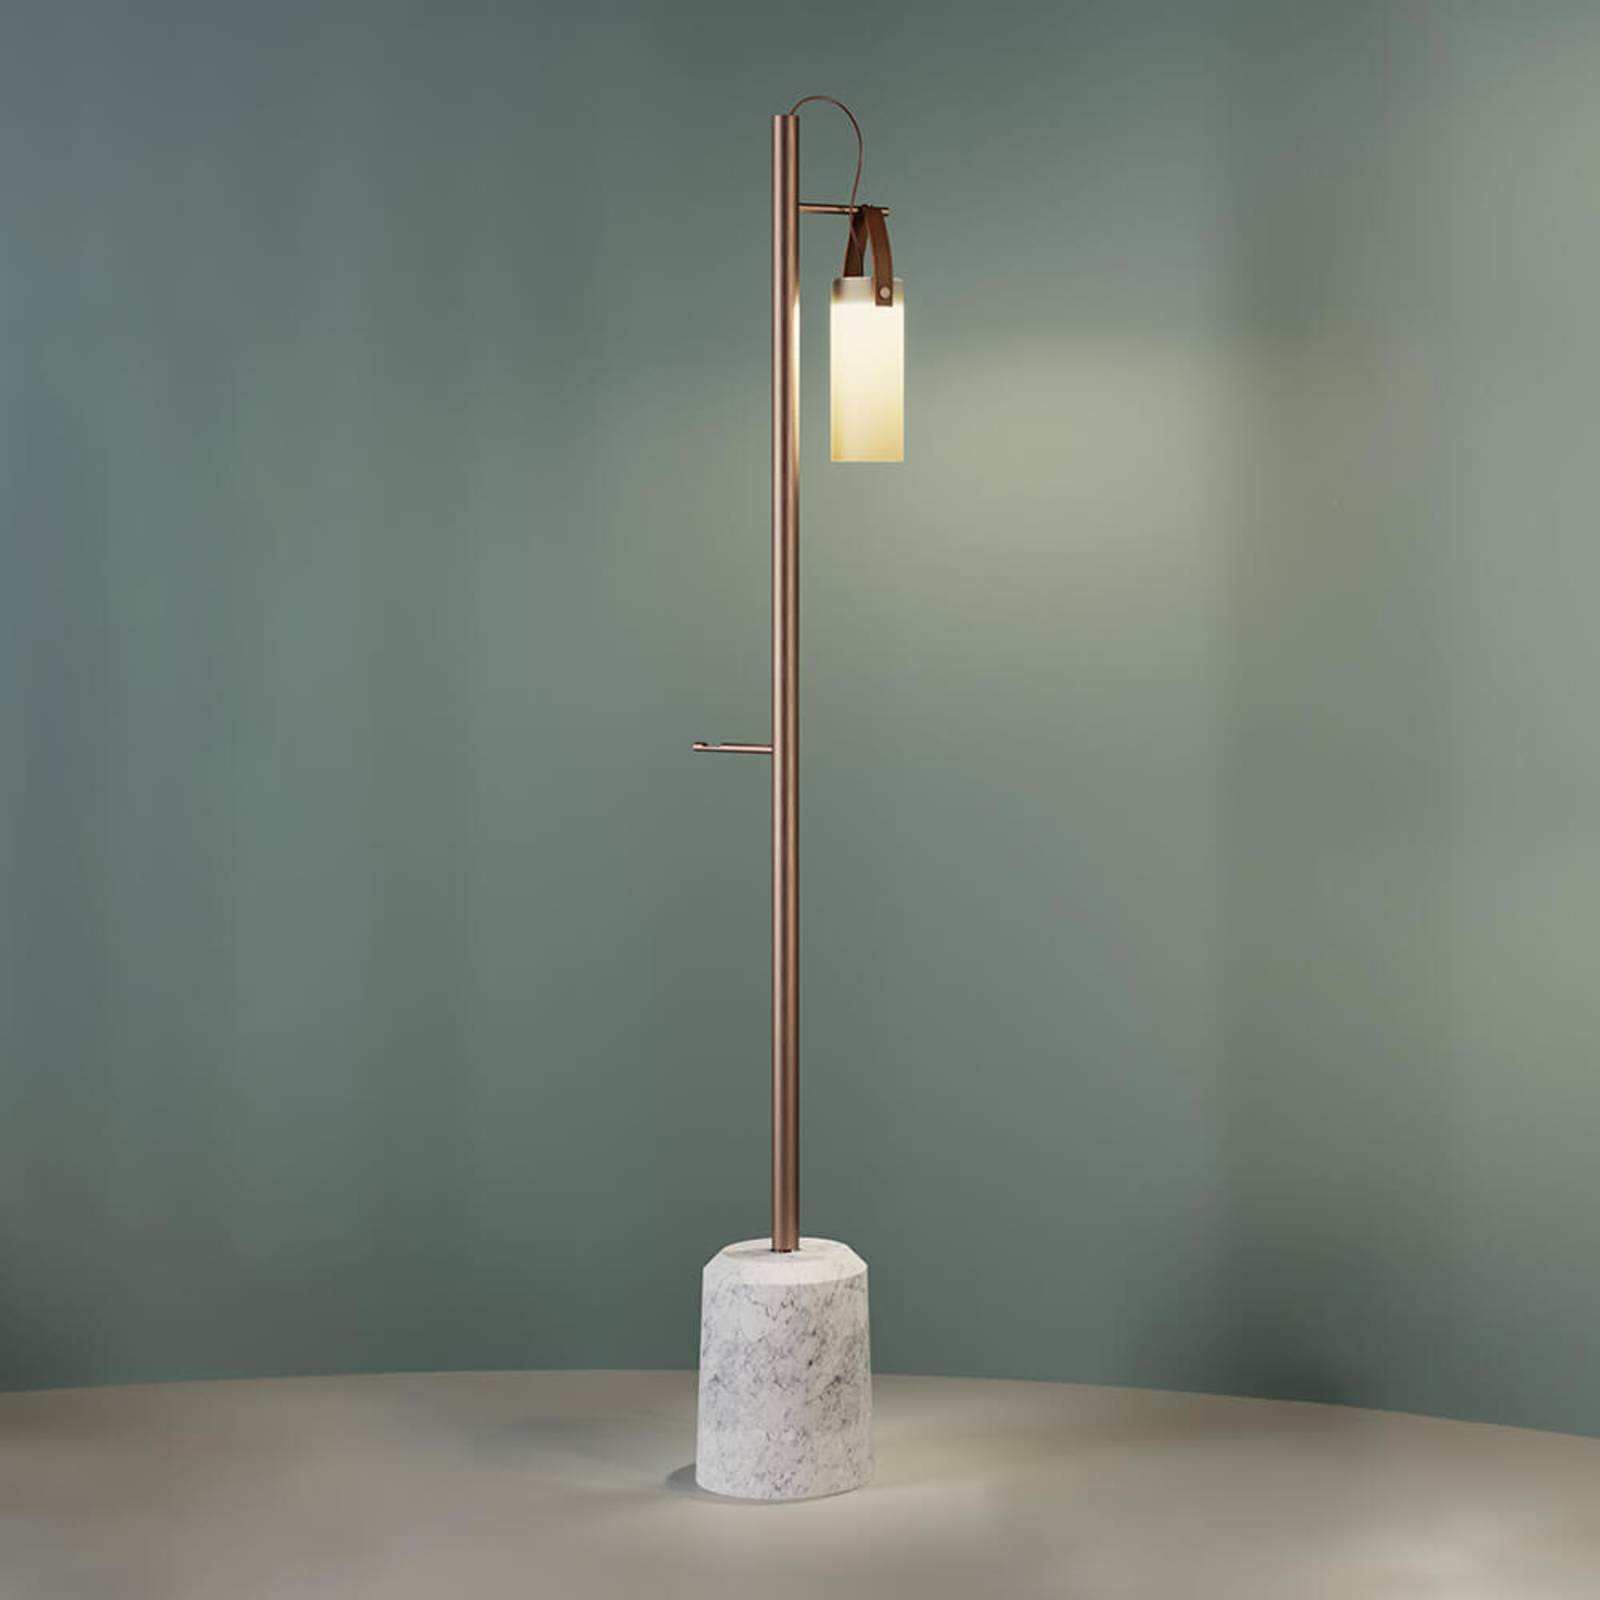 LED design vloerlamp Galerie, met 1 lamp